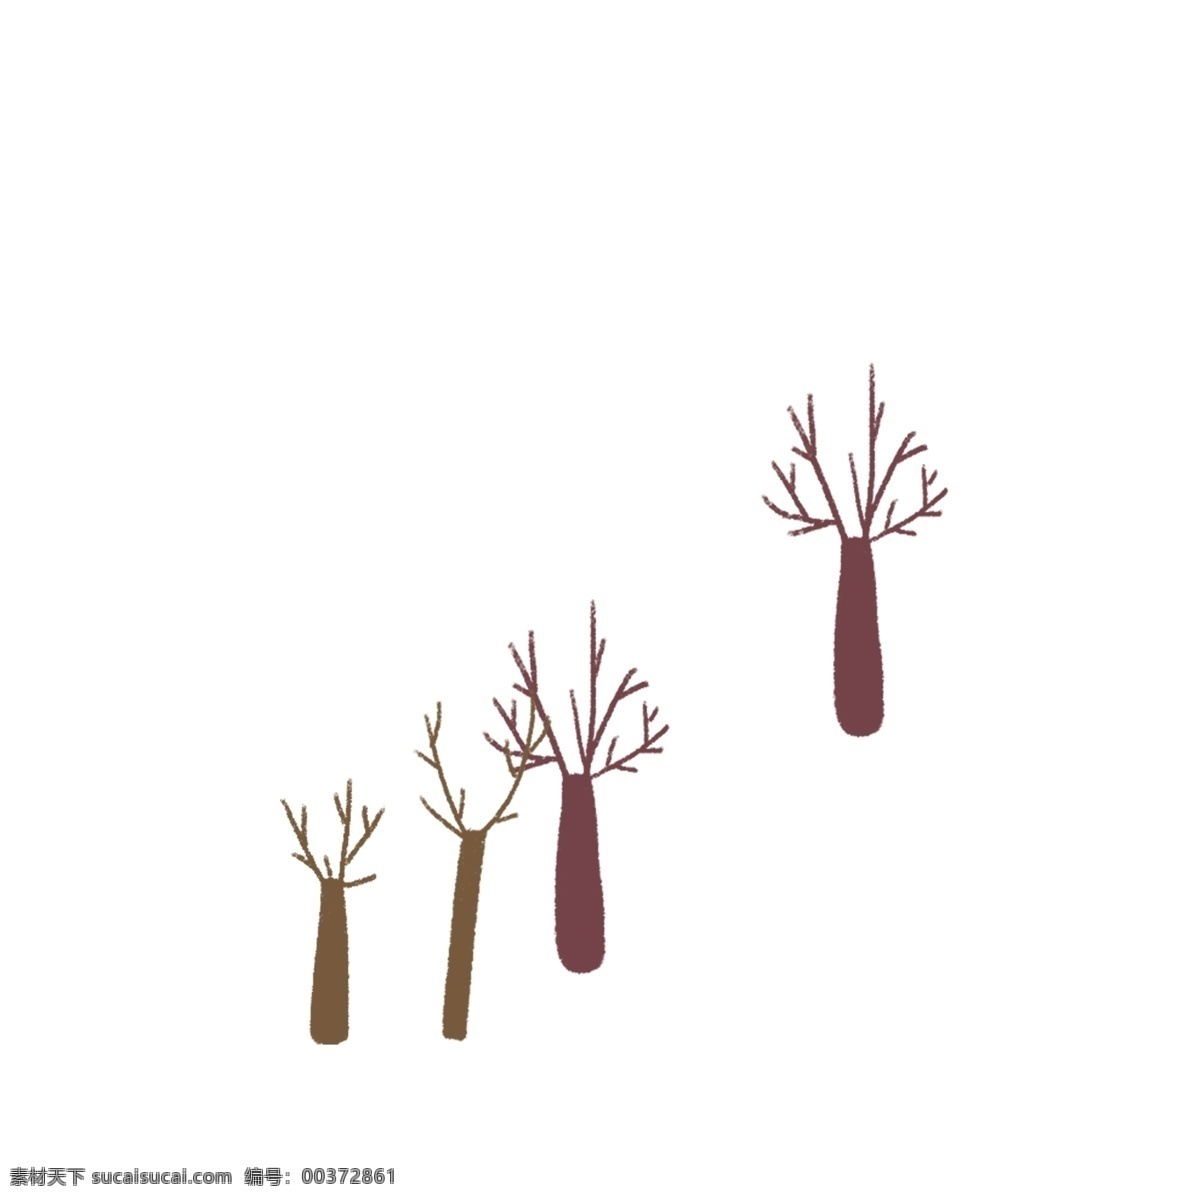 卡通 植物 树枝 免 抠 图 四棵树木 大森林 绿色植物 绿色生态 漂亮的植物 枝杆 卡通植物树枝 免抠图